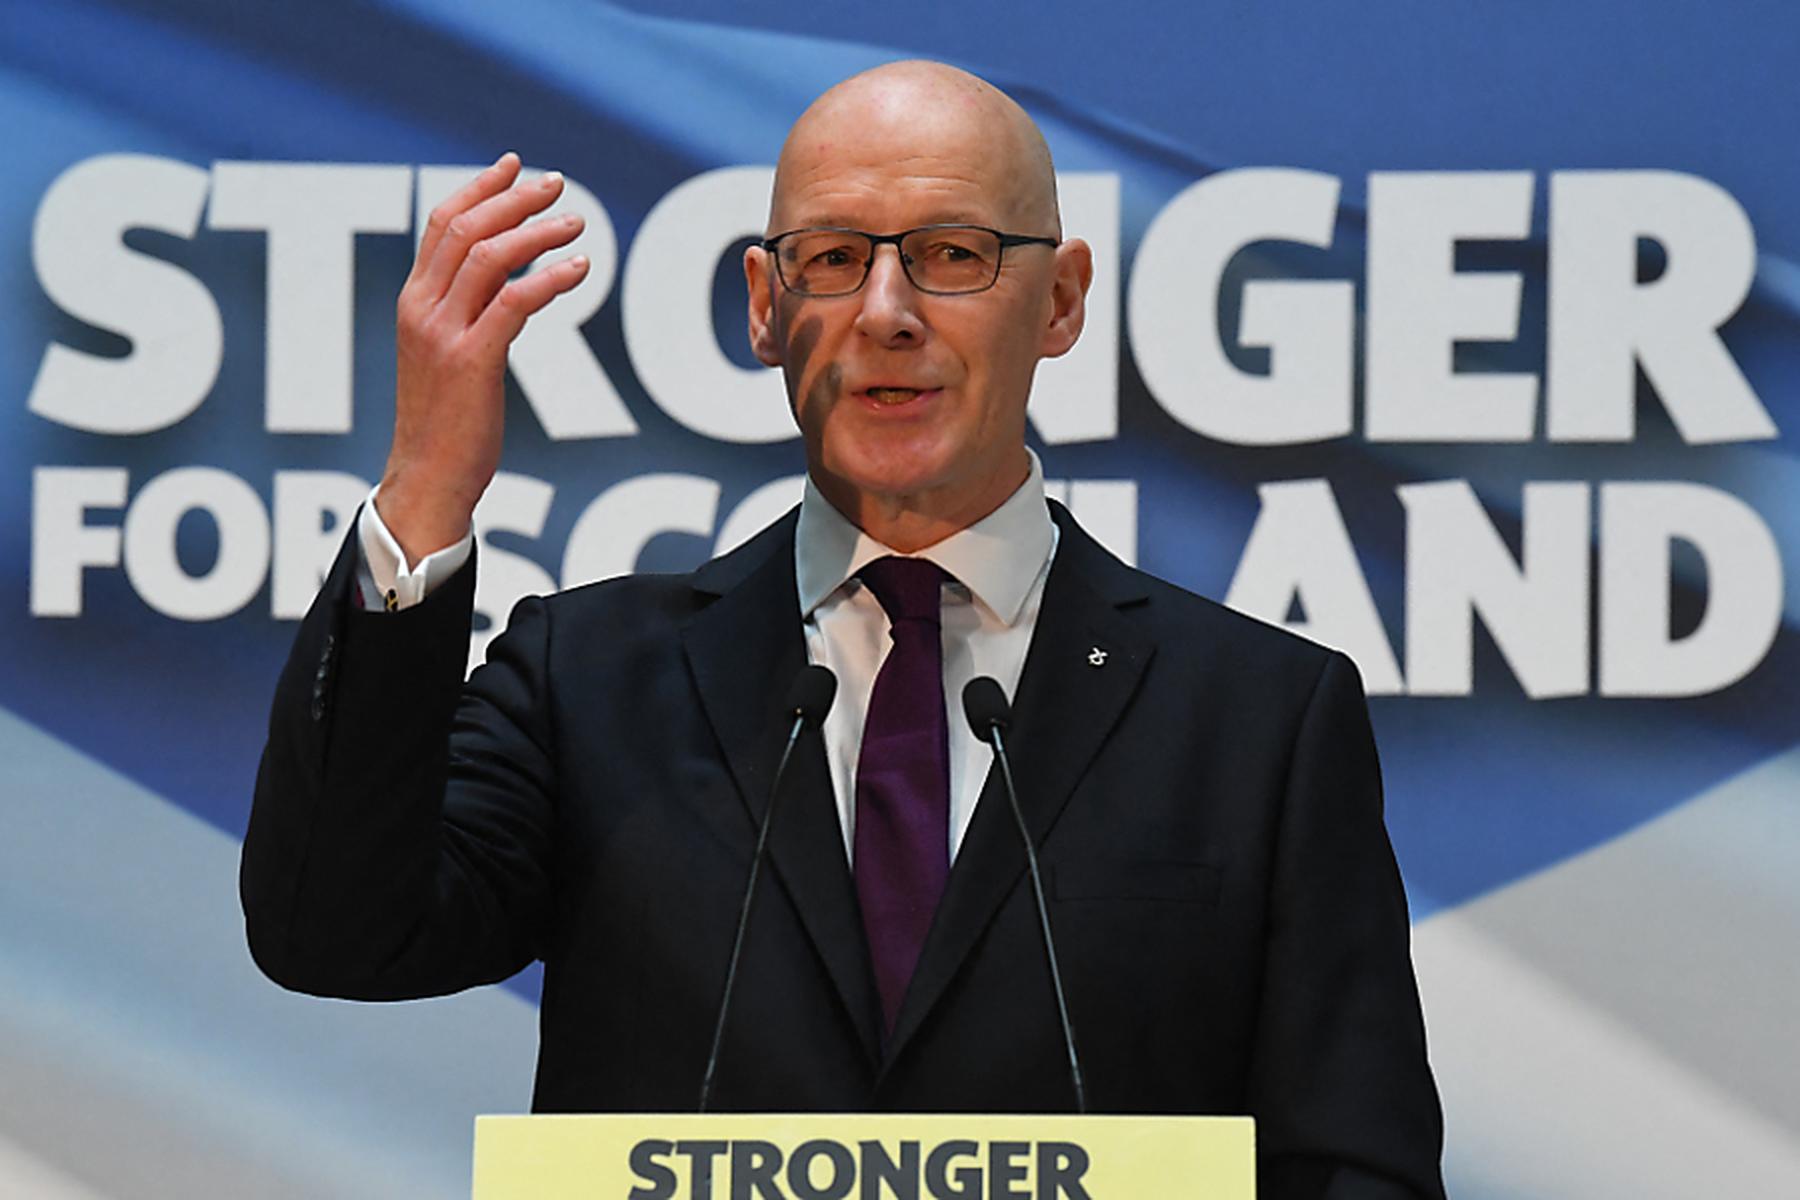 Edinburgh: John Swinney wird neuer Regierungschef in Schottland